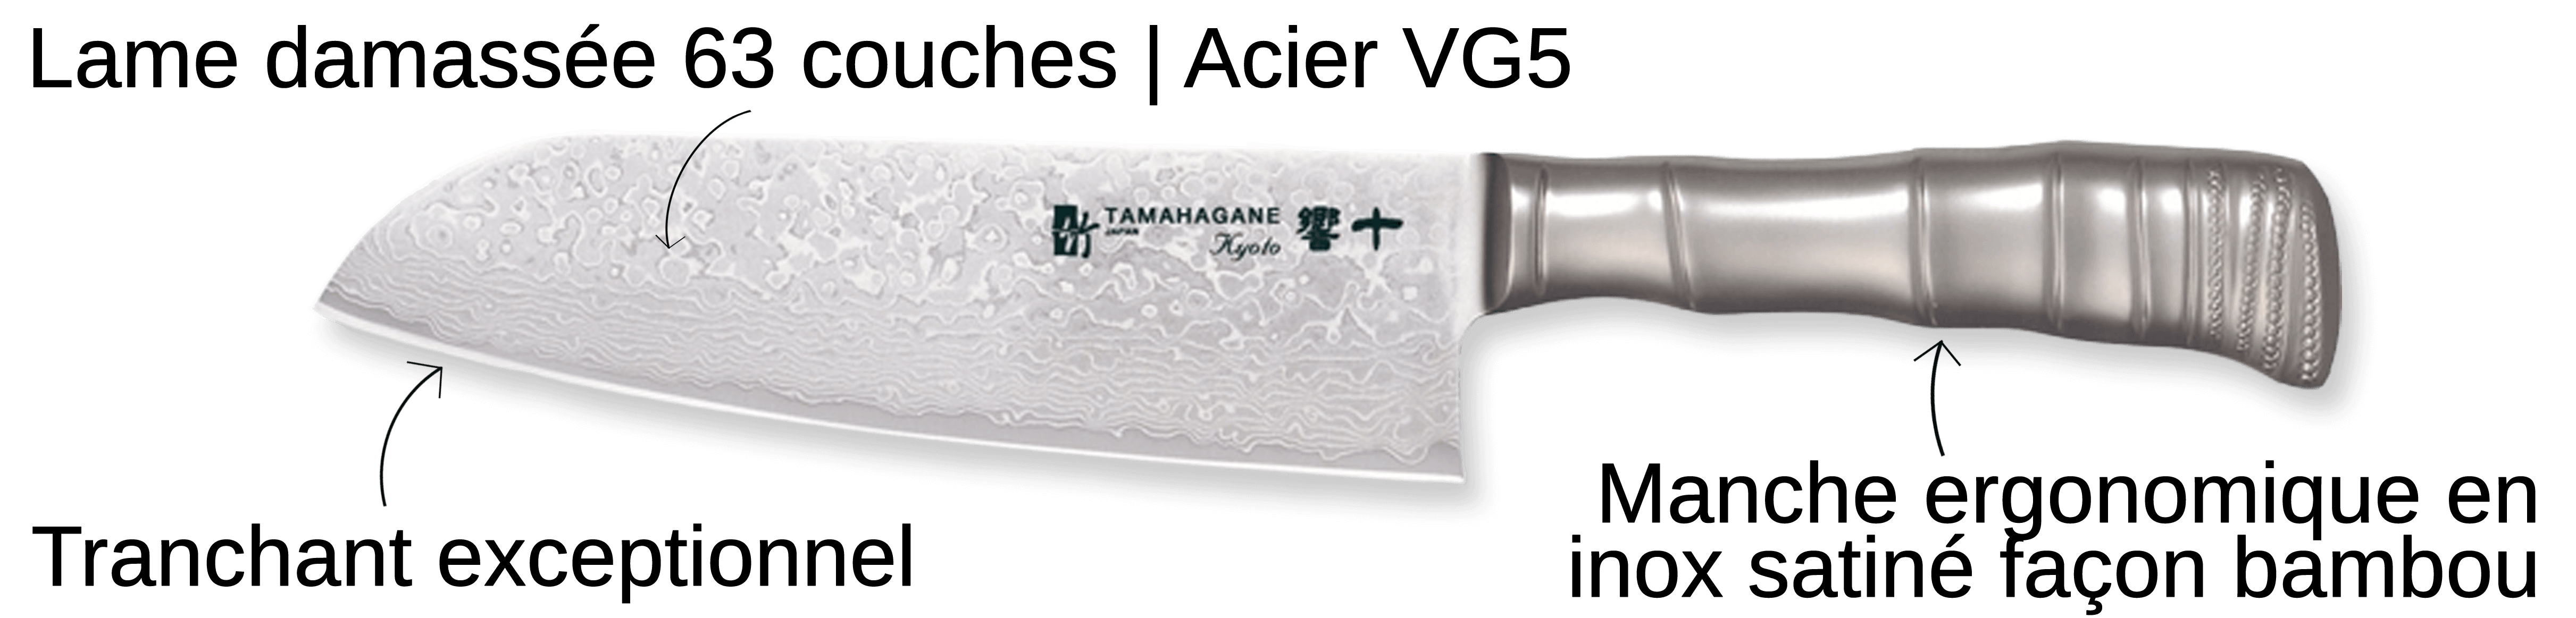 Découvrez le couteau Tamahagane Bamboo Kyoto ici